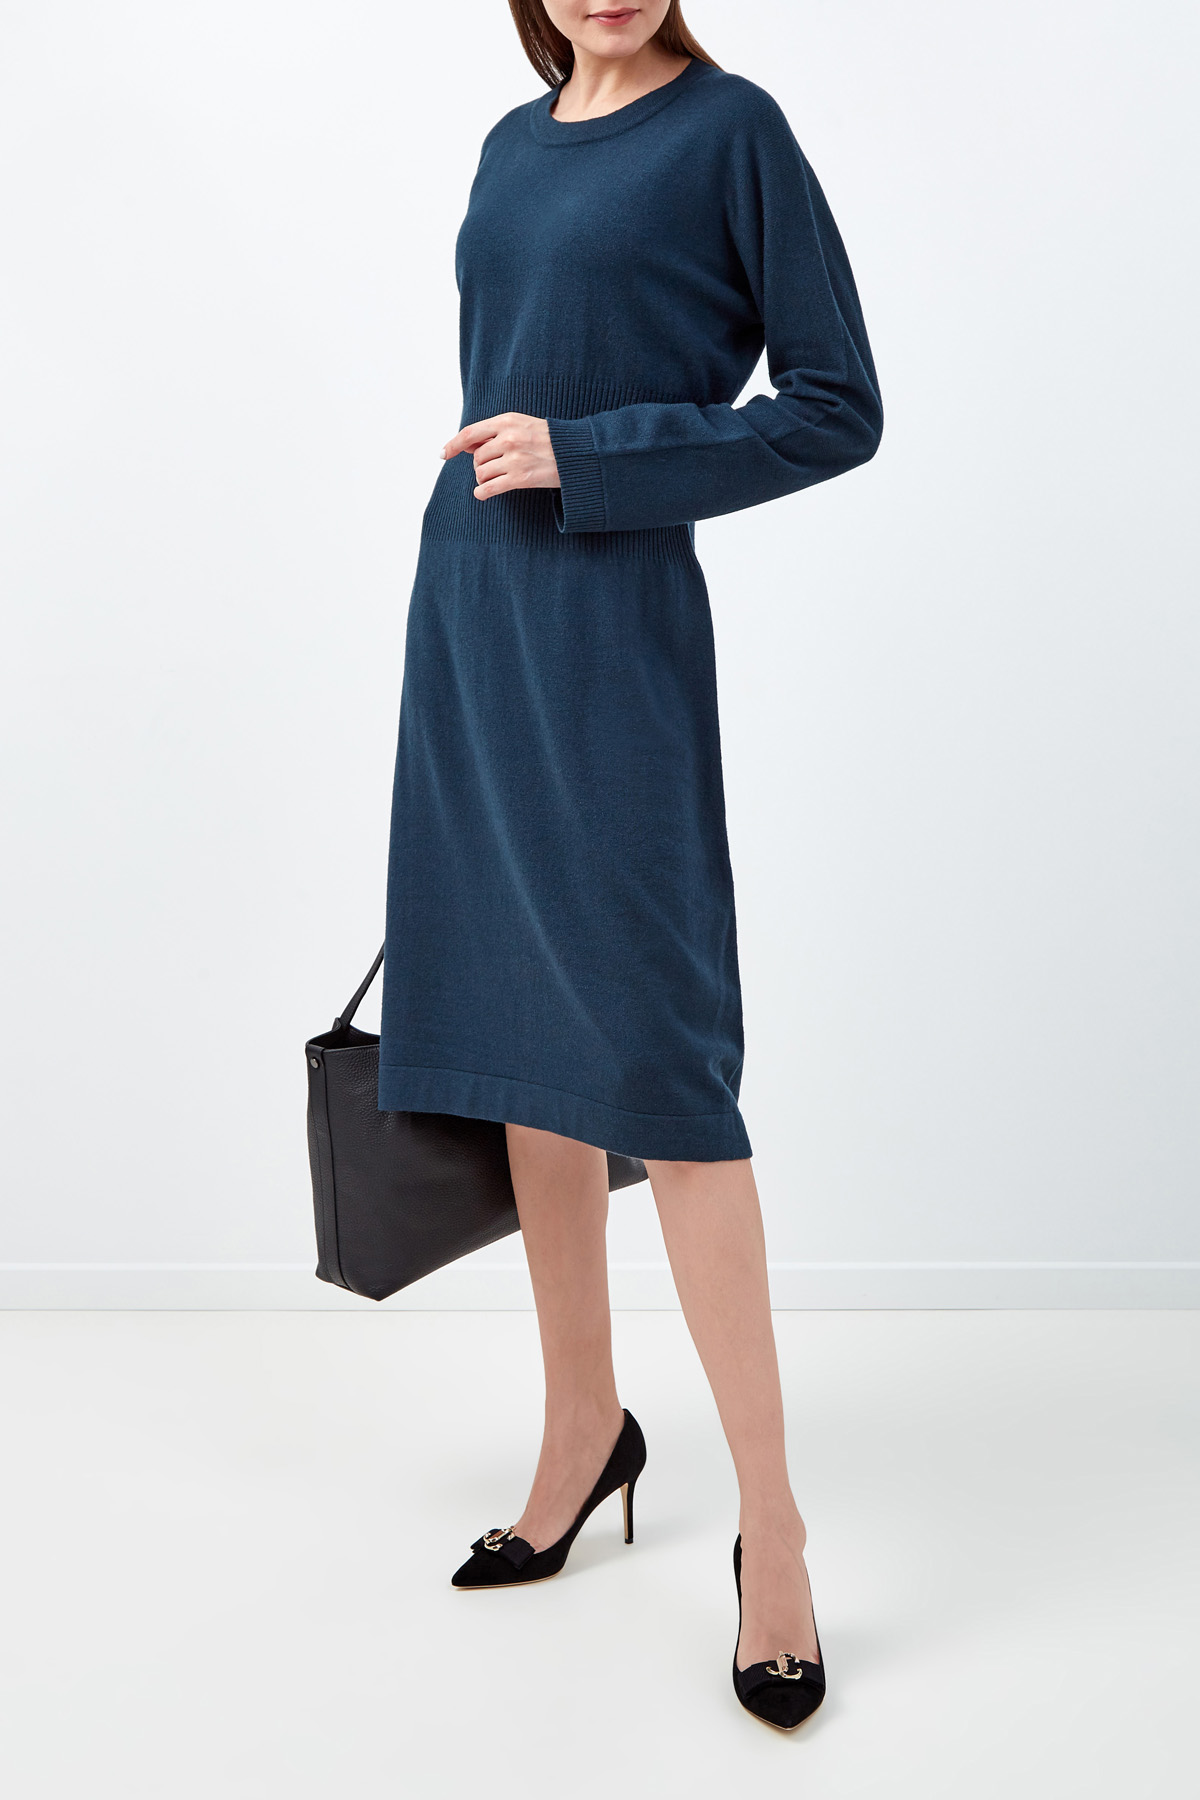 Приталенное платье из фирменной пряжи Platinum FABIANA FILIPPI, цвет бирюзовый, размер 40 - фото 2